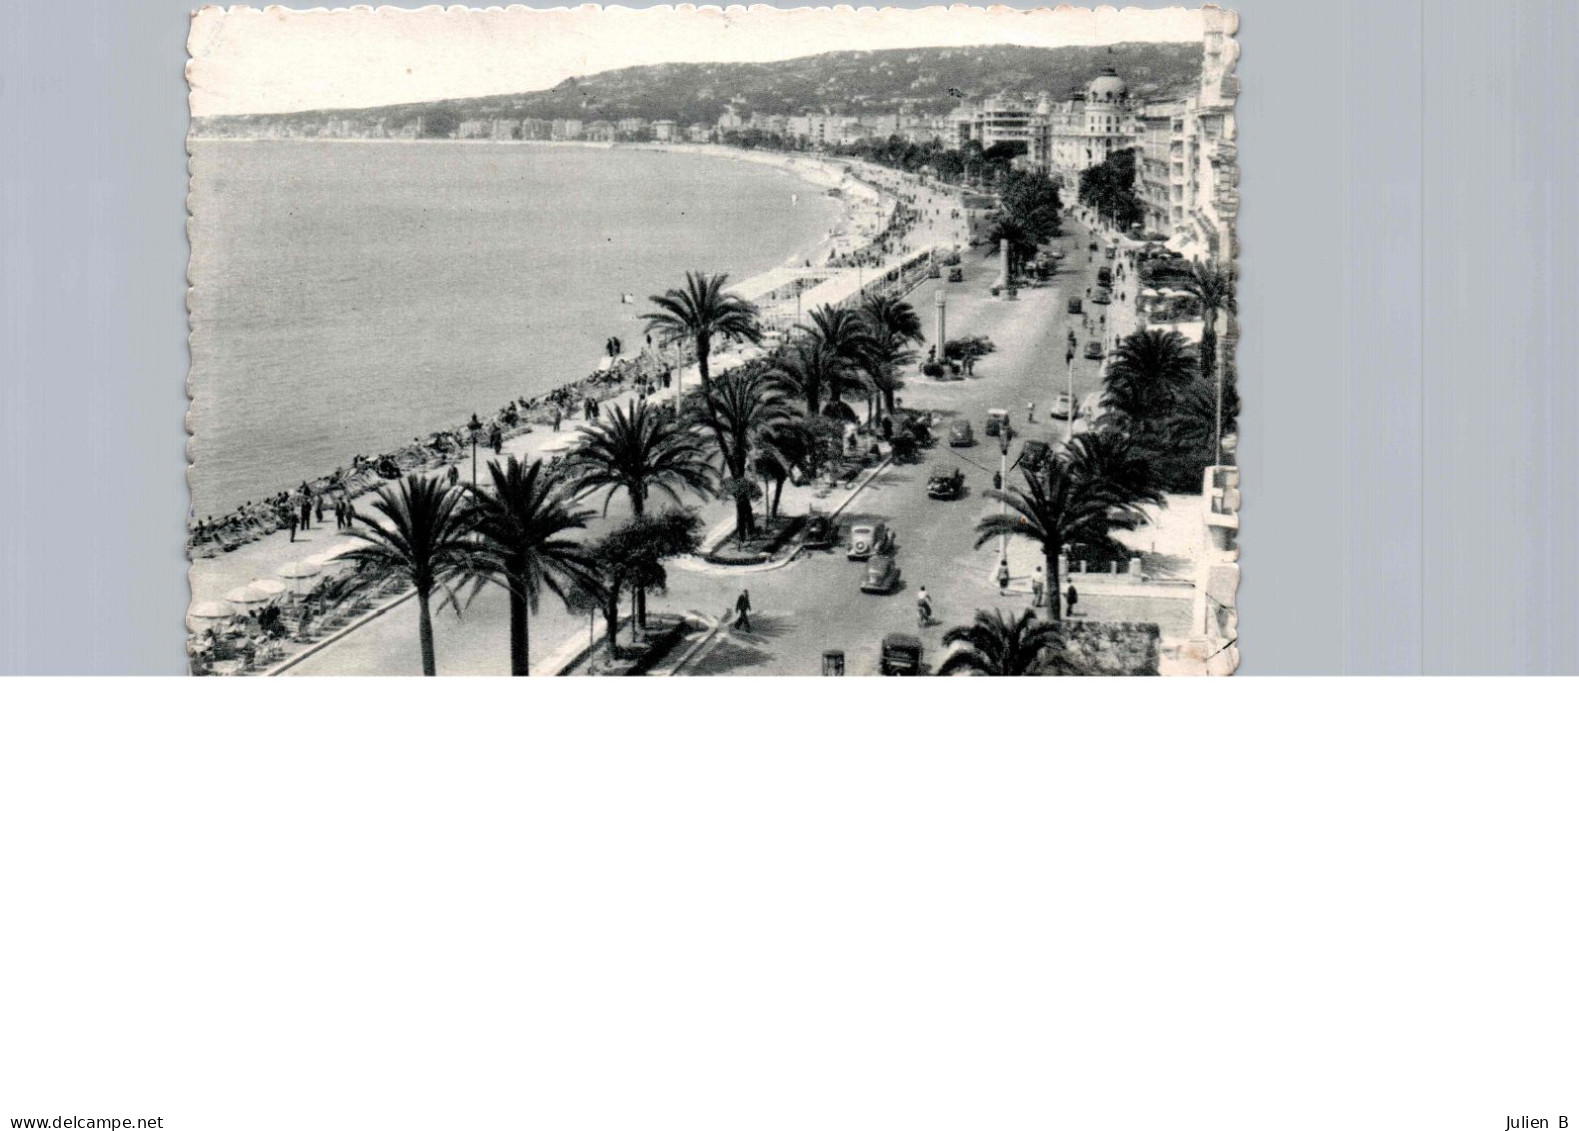 Nice, Promenade Des Anglais, Vue Prise De L'hotel Ruhl, 20 Juillet 1953, Timbre 8f - Places, Squares